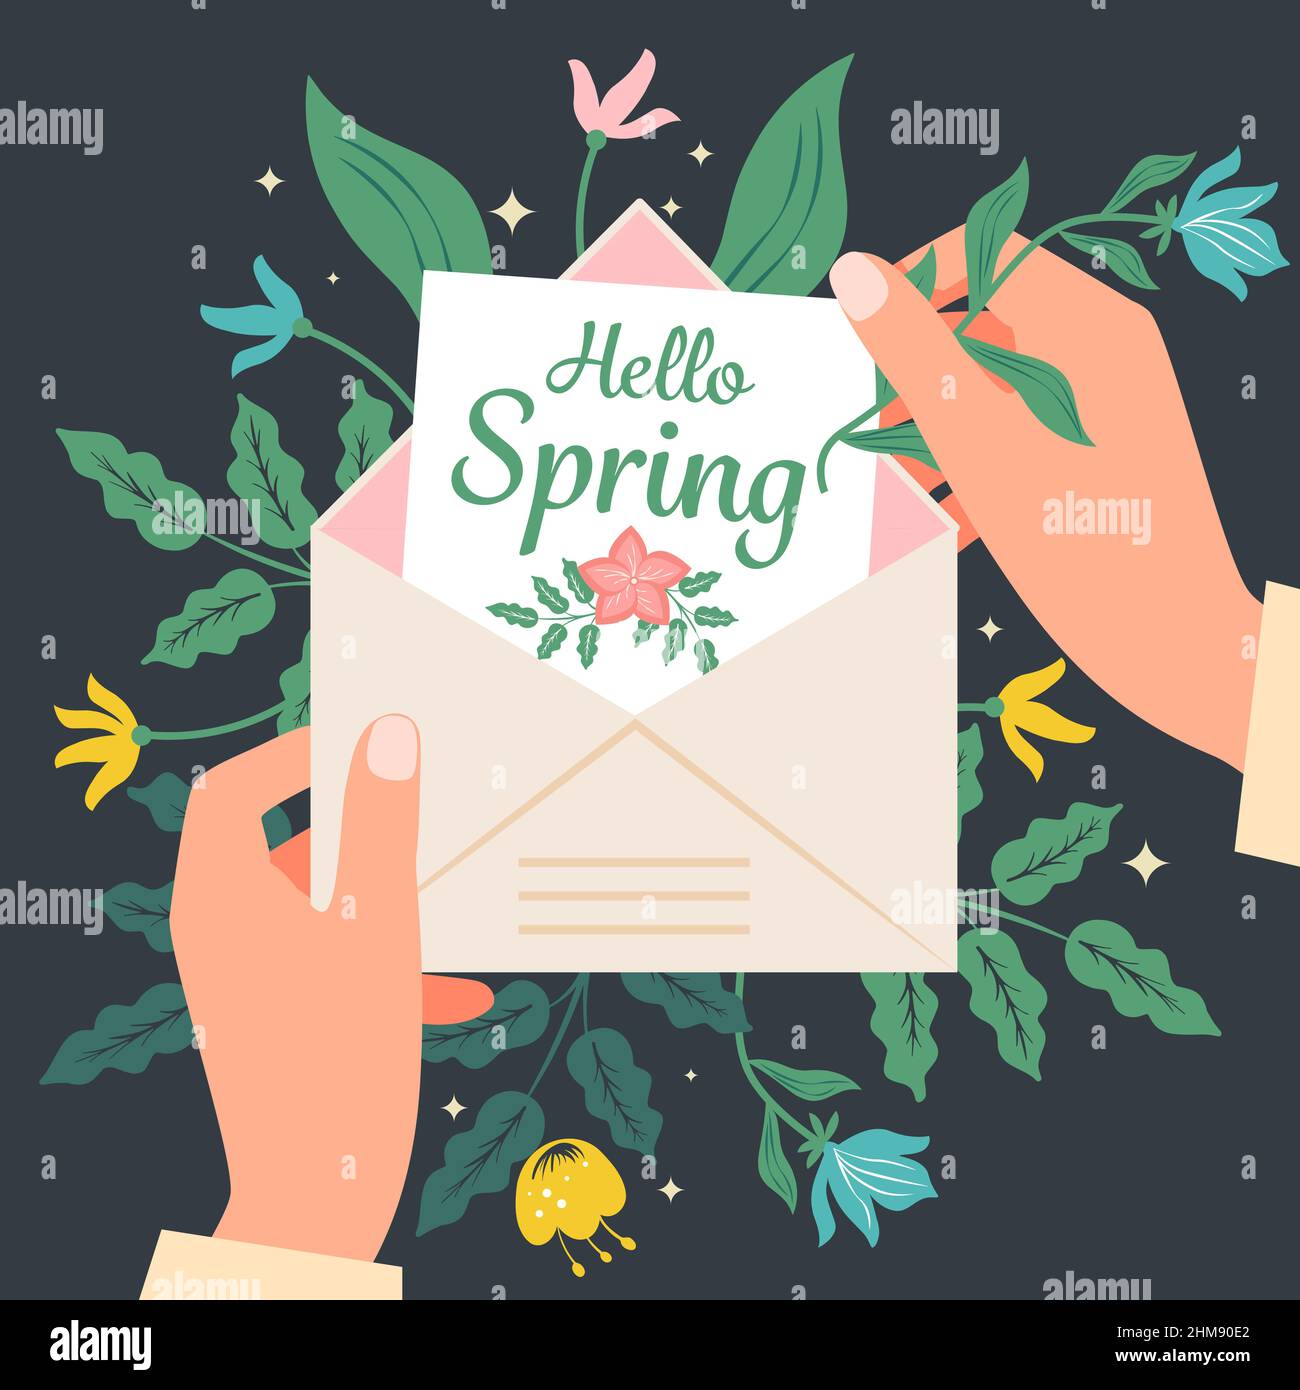 Hände halten einen Umschlag mit einer Grußkarte Hallo Frühling auf einem Hintergrund von Blumen. Vektorgrafik in einem flachen Stil. Stock Vektor